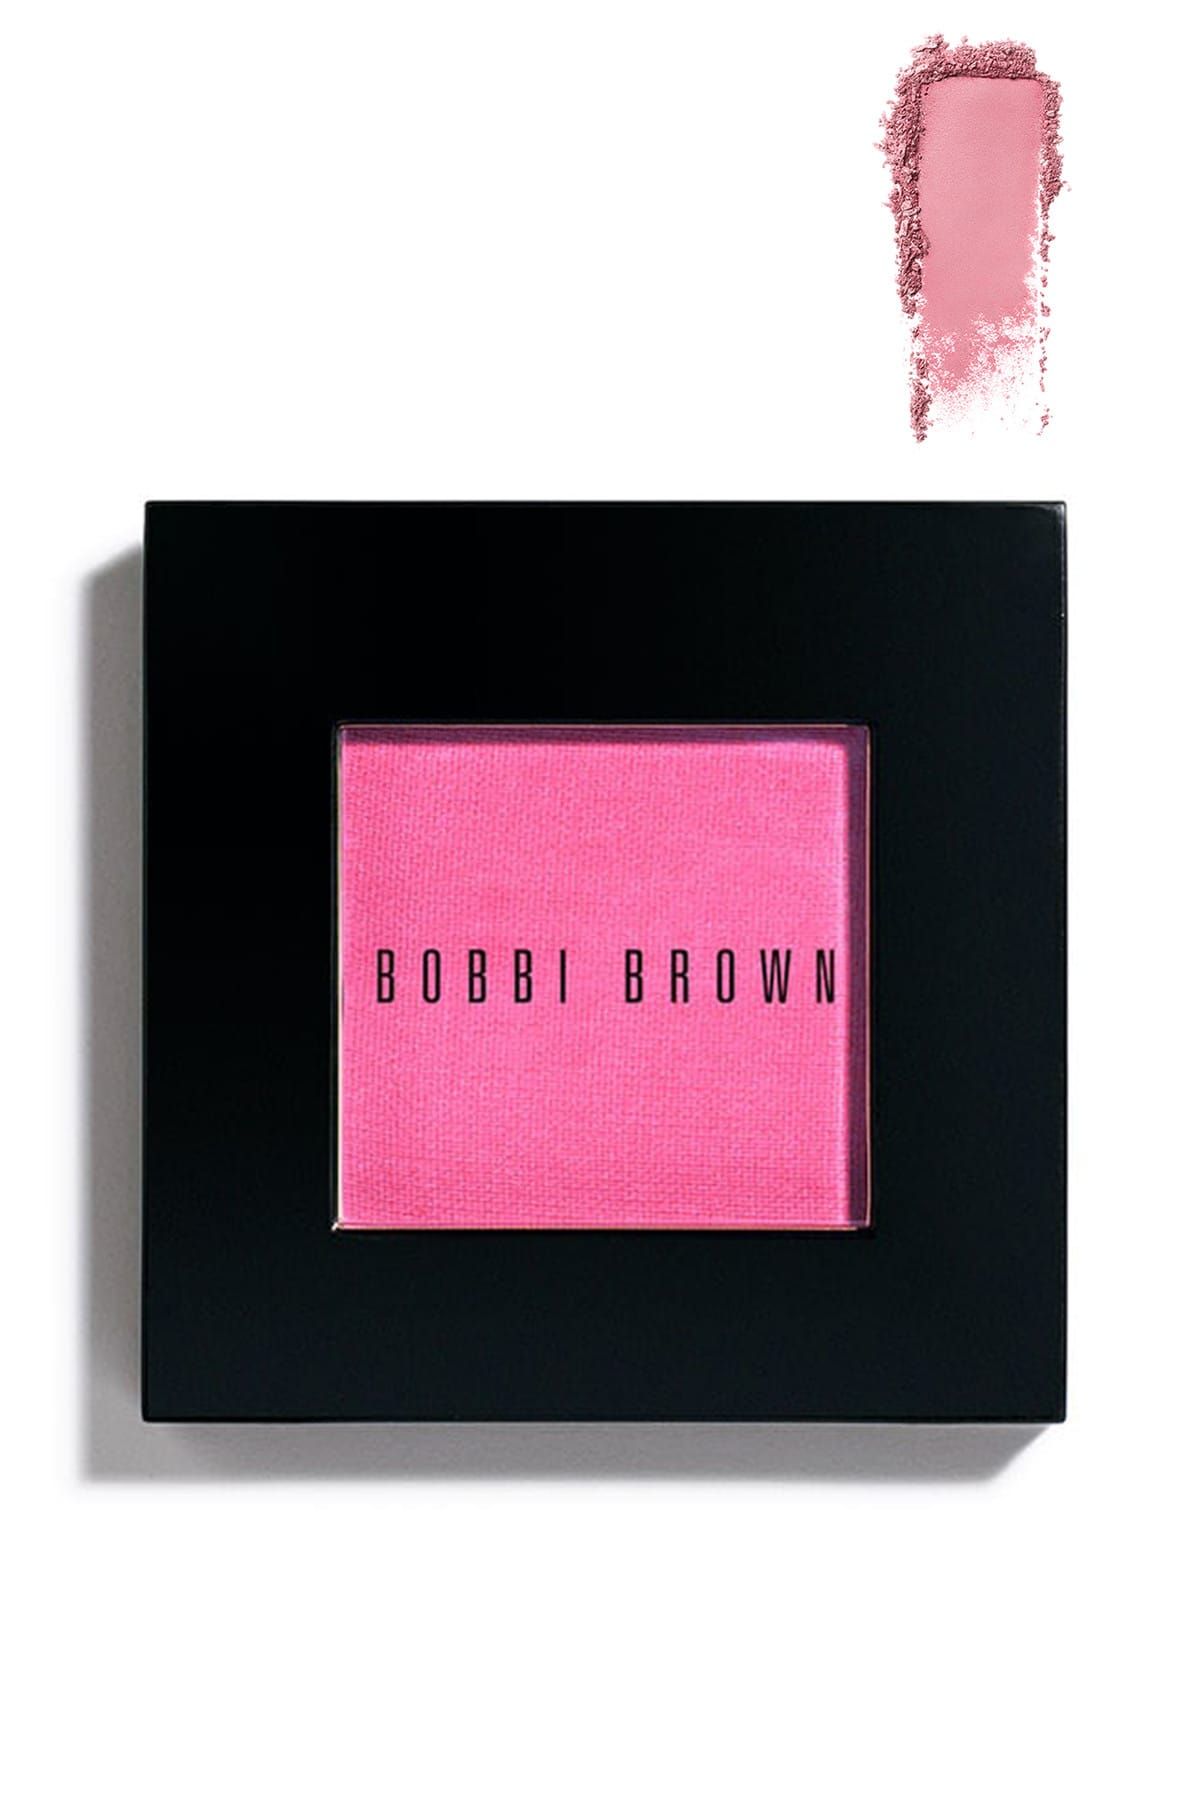 Bobbi Brown Blush / Allık 3.7 G New Pretty Pink 716170103747